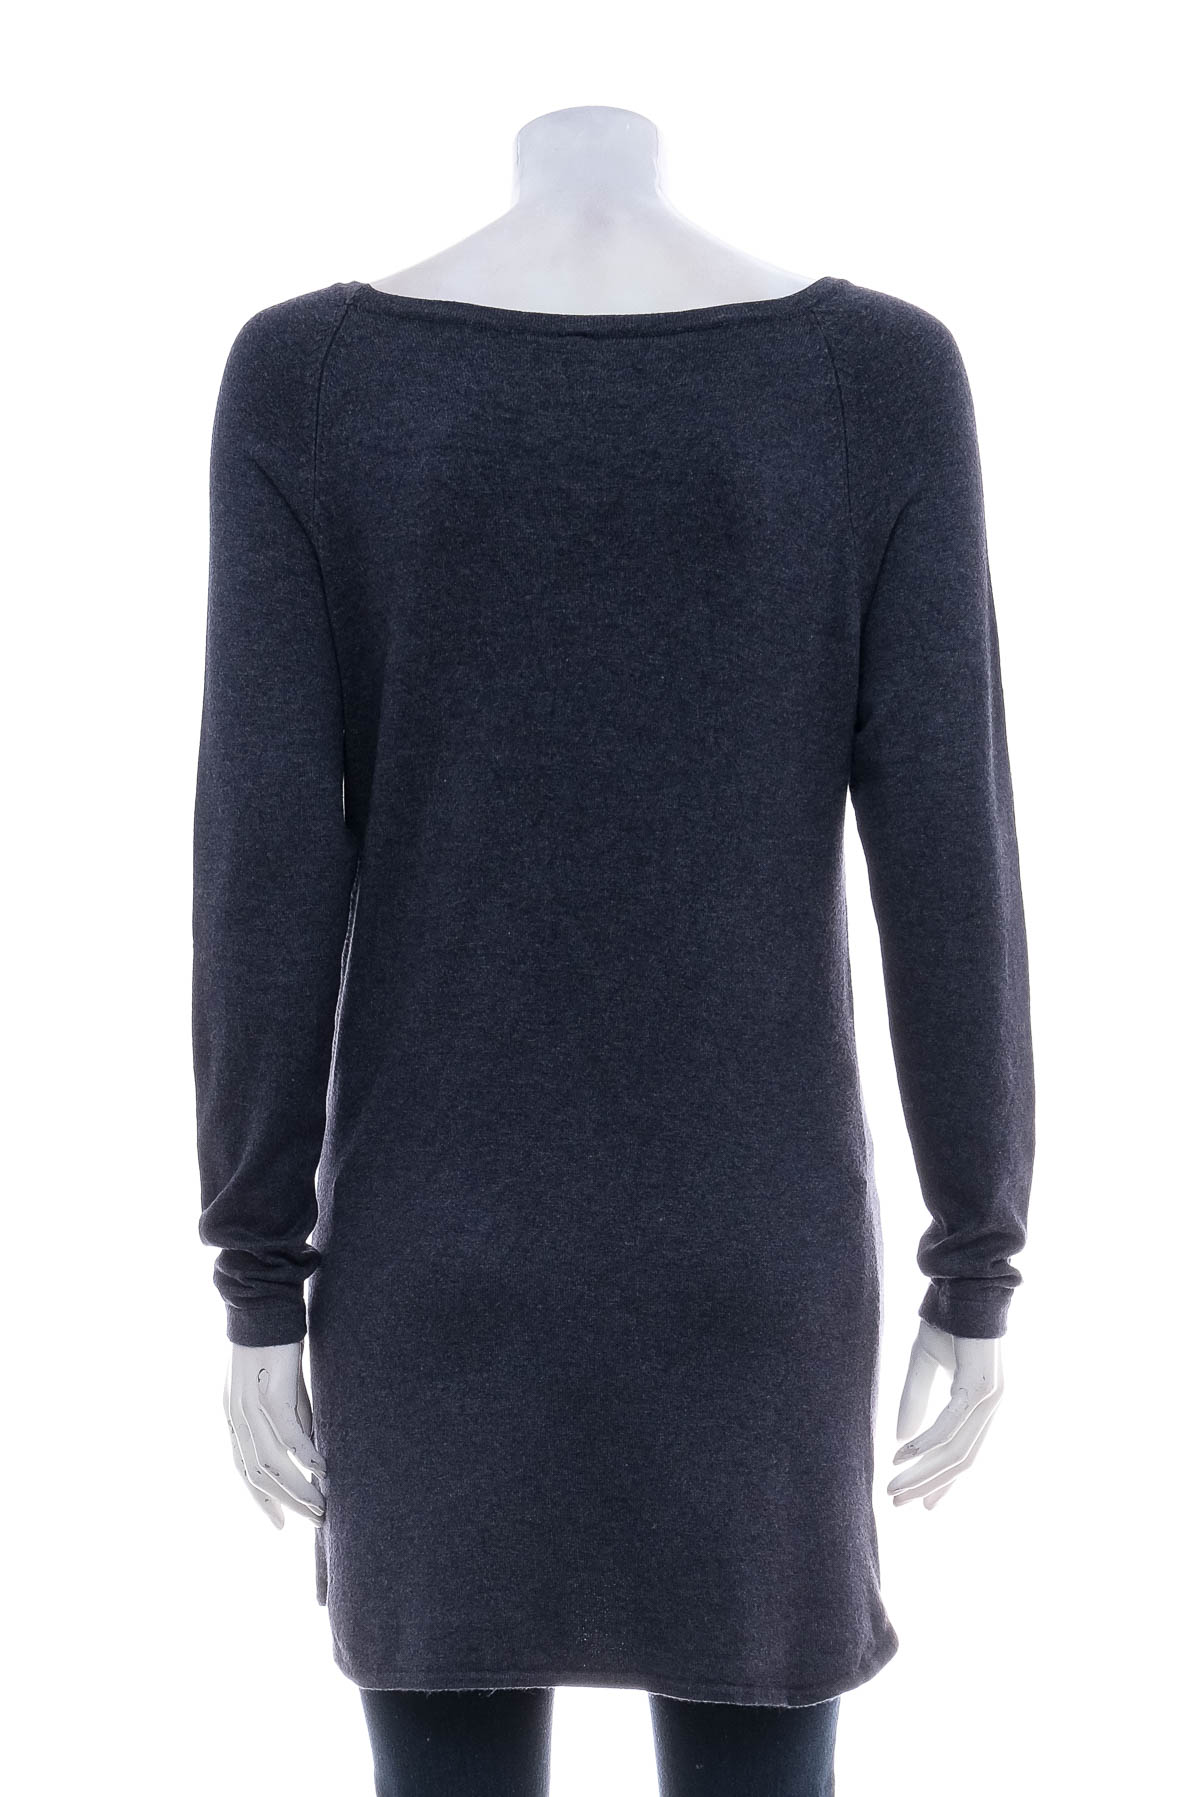 Women's sweater - Chicoree - 1